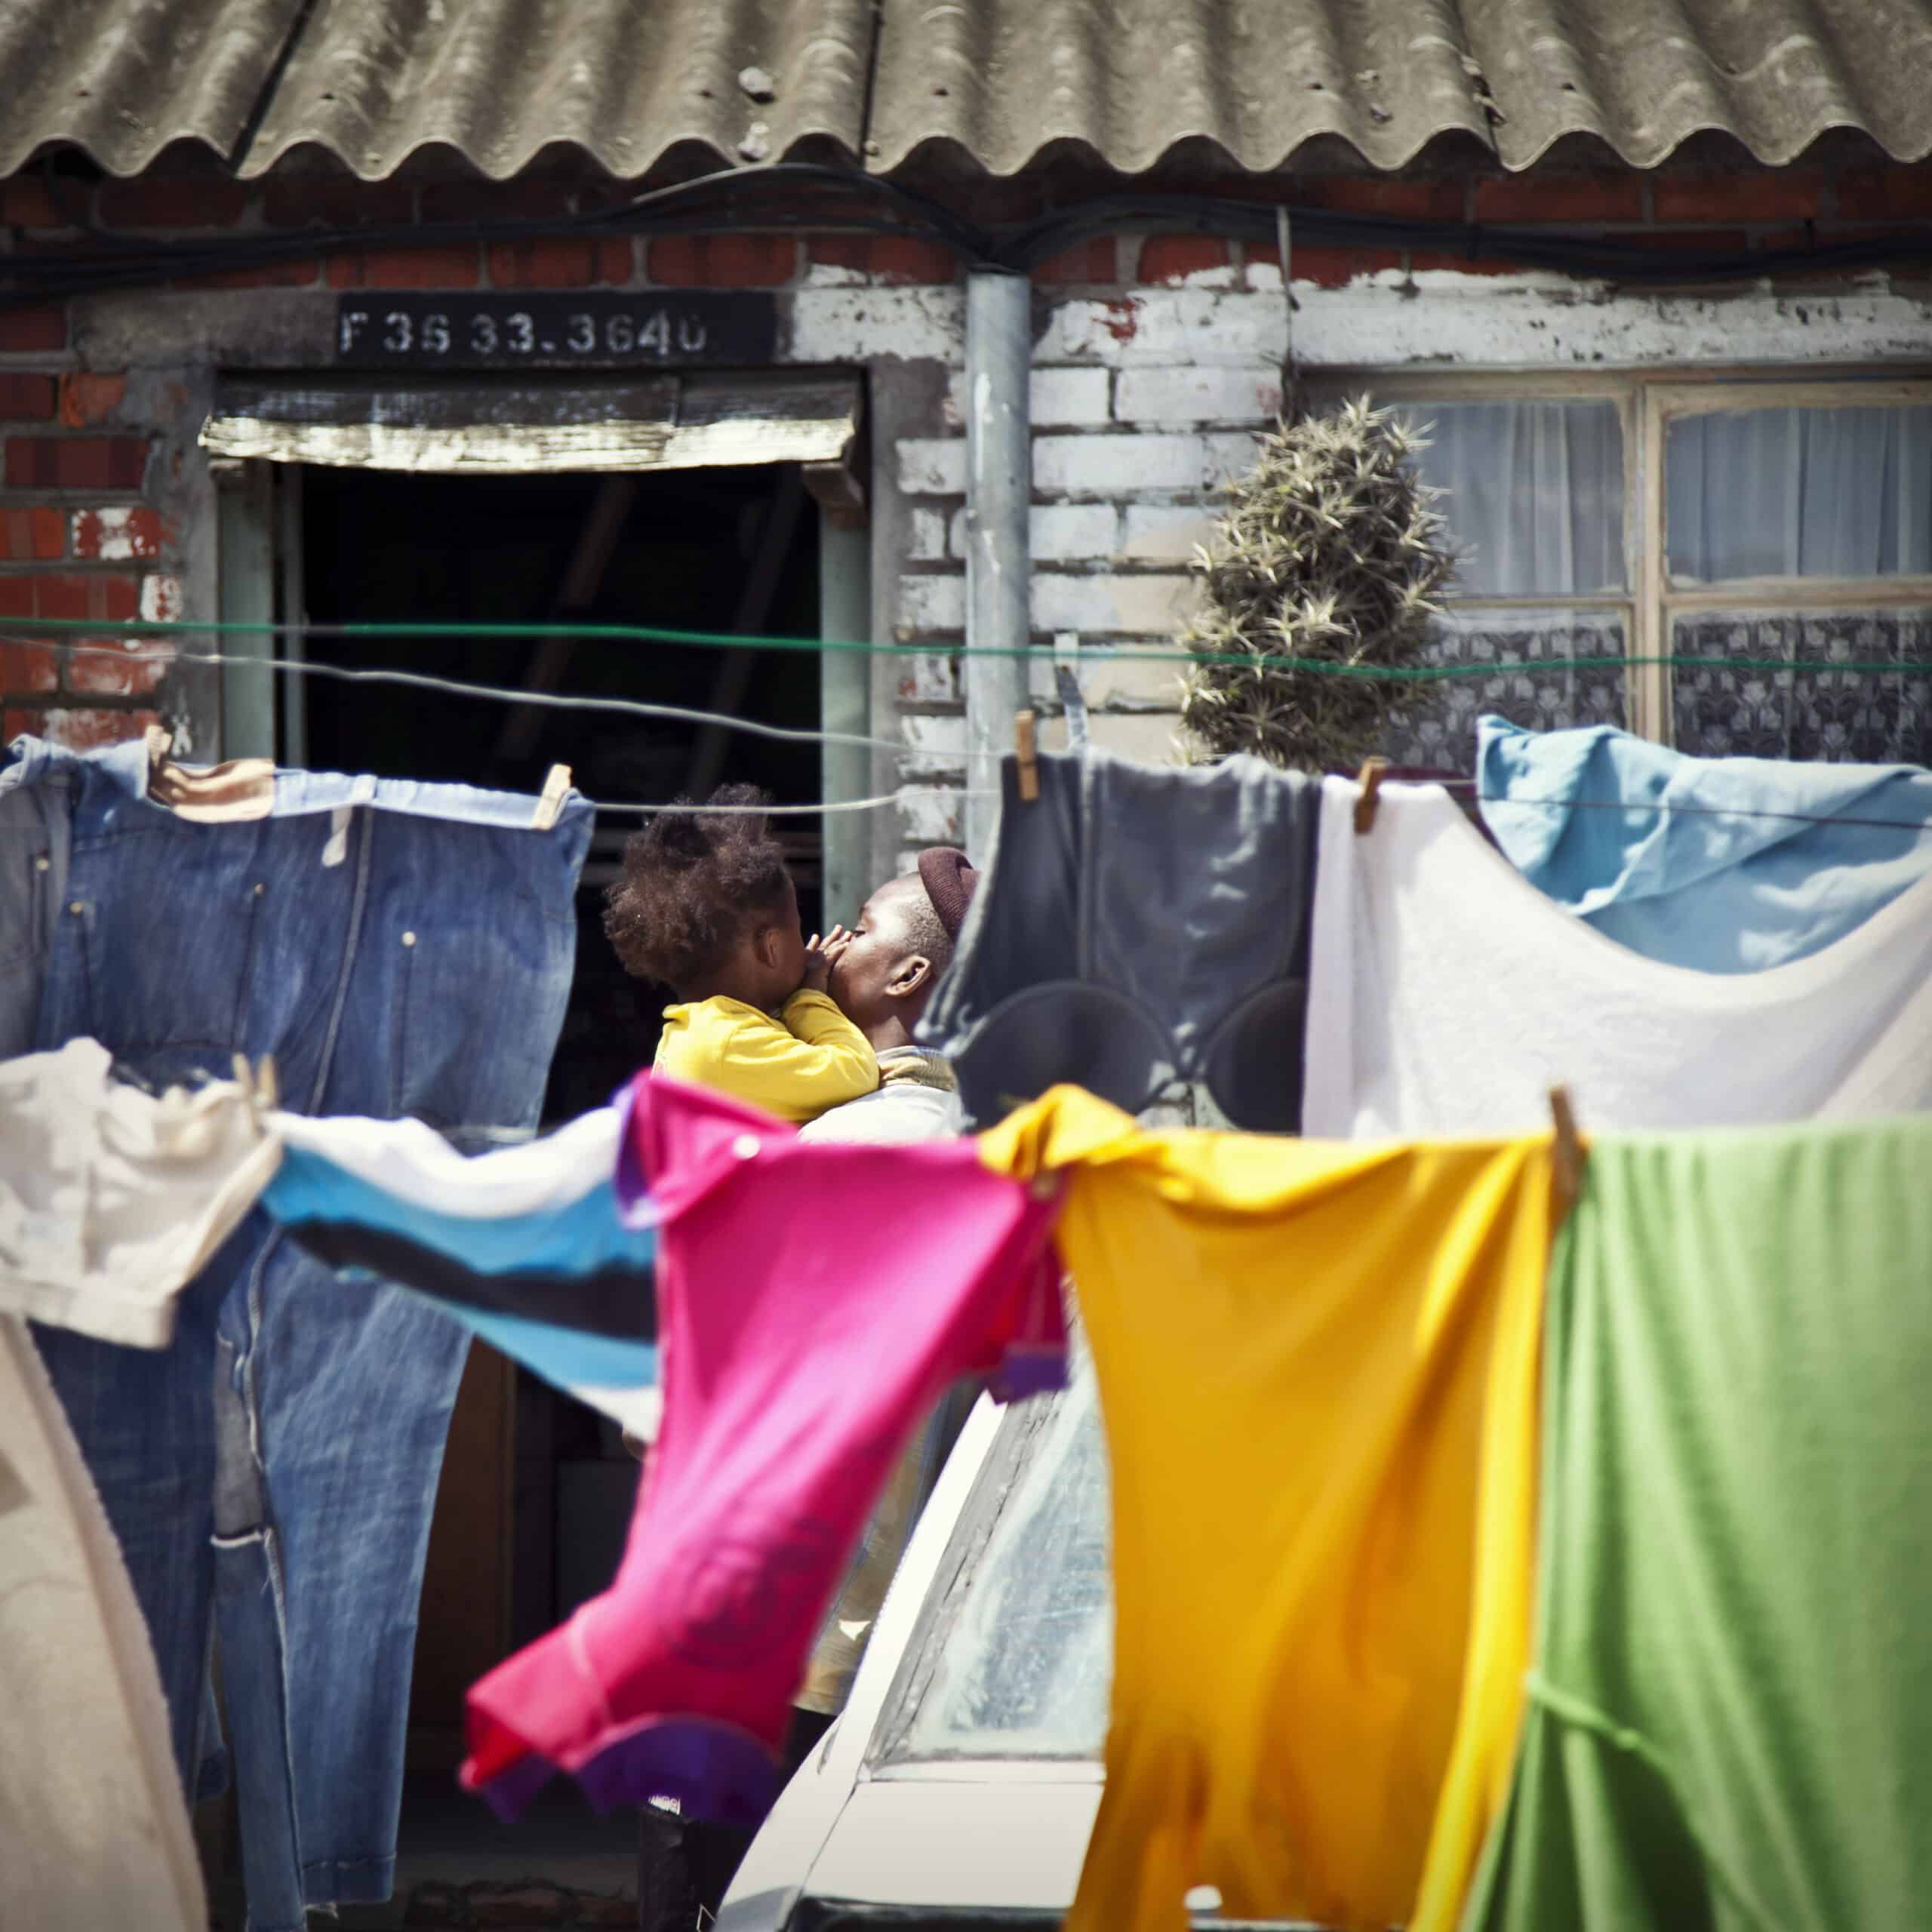 Eine Frau hält ein Kind vor einem bescheidenen Haus. Zwischen ihr und der Kamera hängt strahlend saubere Wäsche zum Trocknen auf einer Leine. © Fotografie Tomas Rodriguez